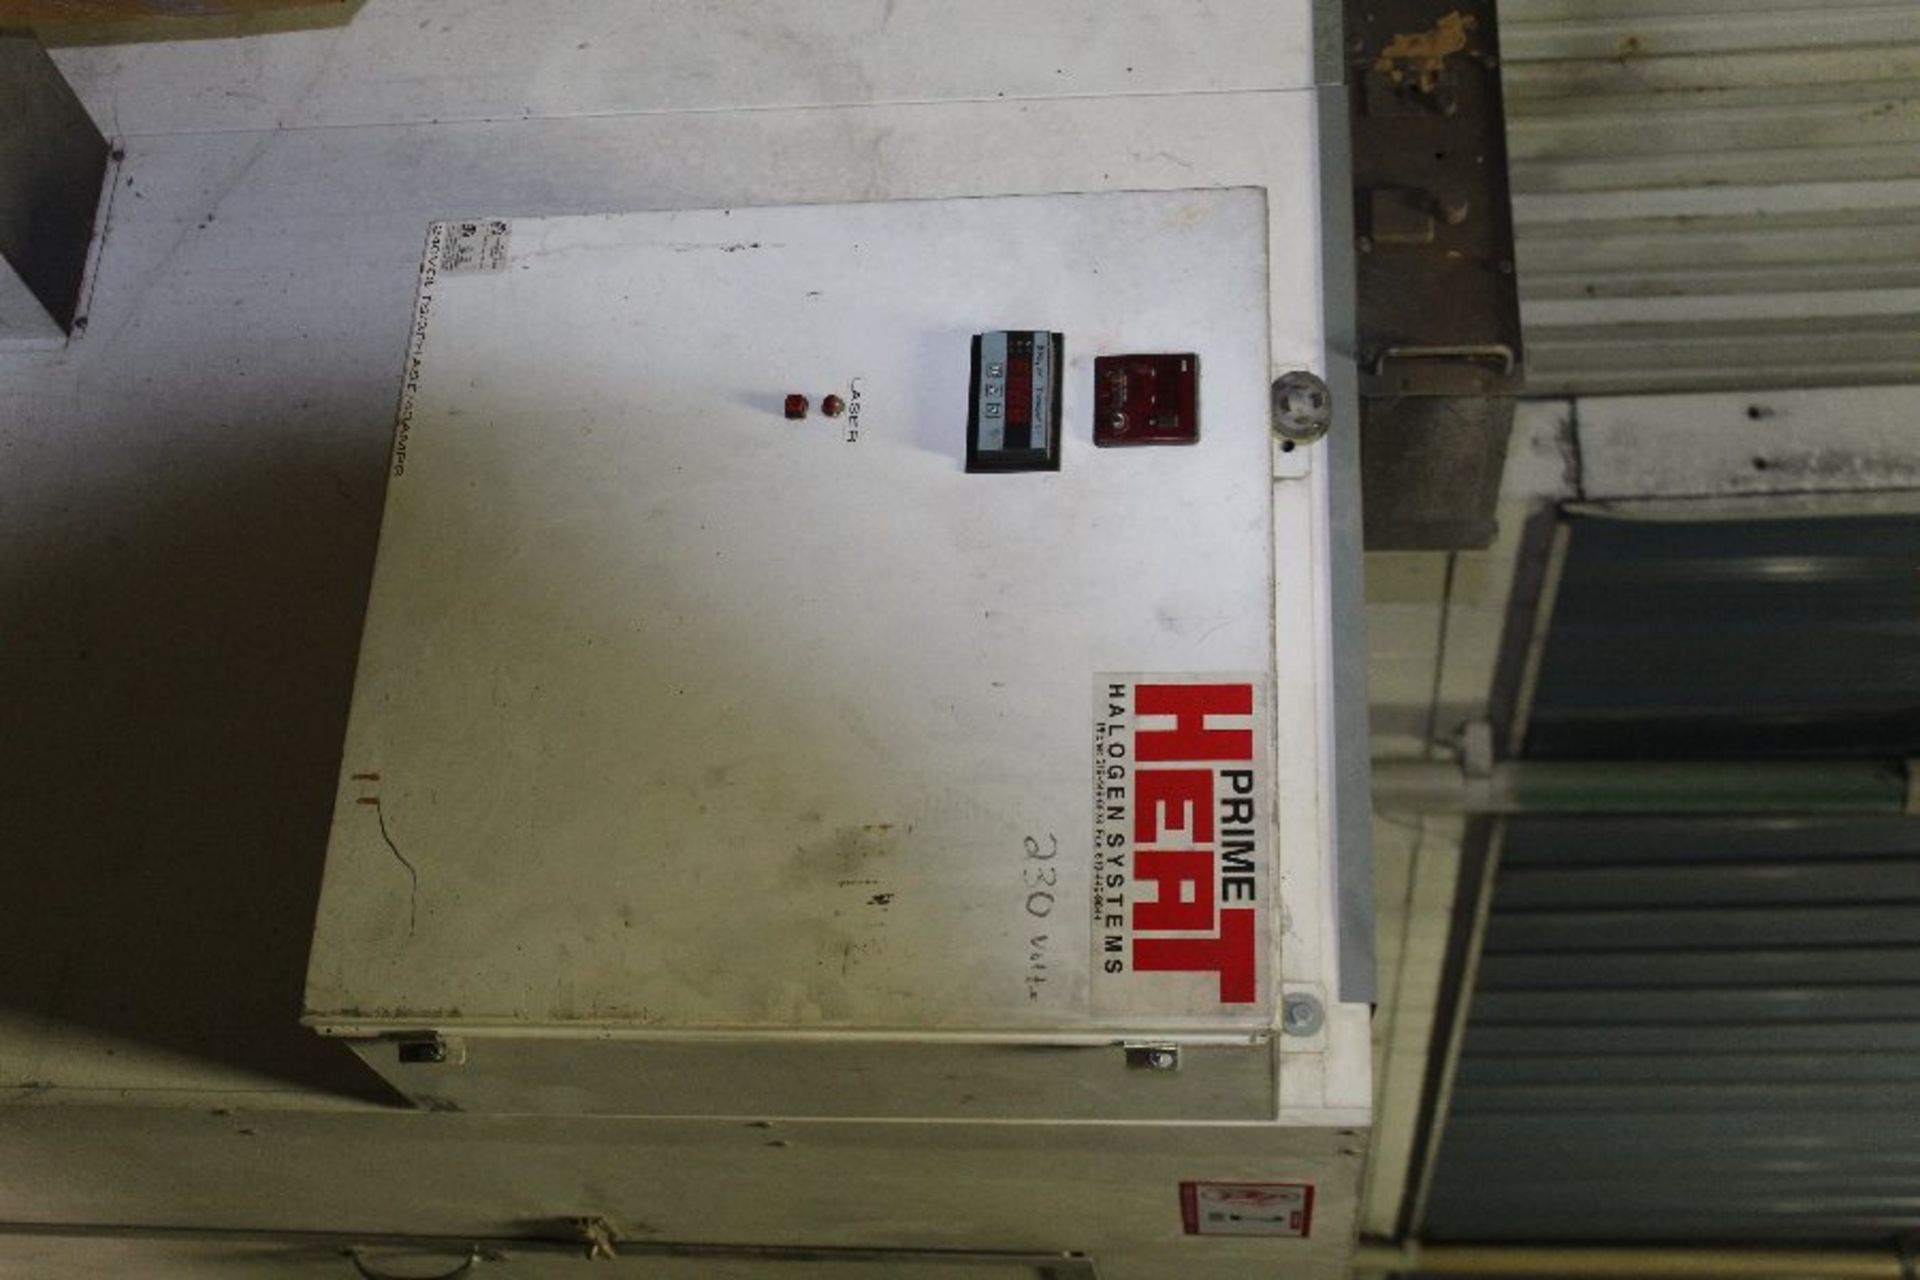 Prime Heat Halogen System Paint Curing Oven, 72" X 72" X 70", 34" X 60" door - Image 3 of 3